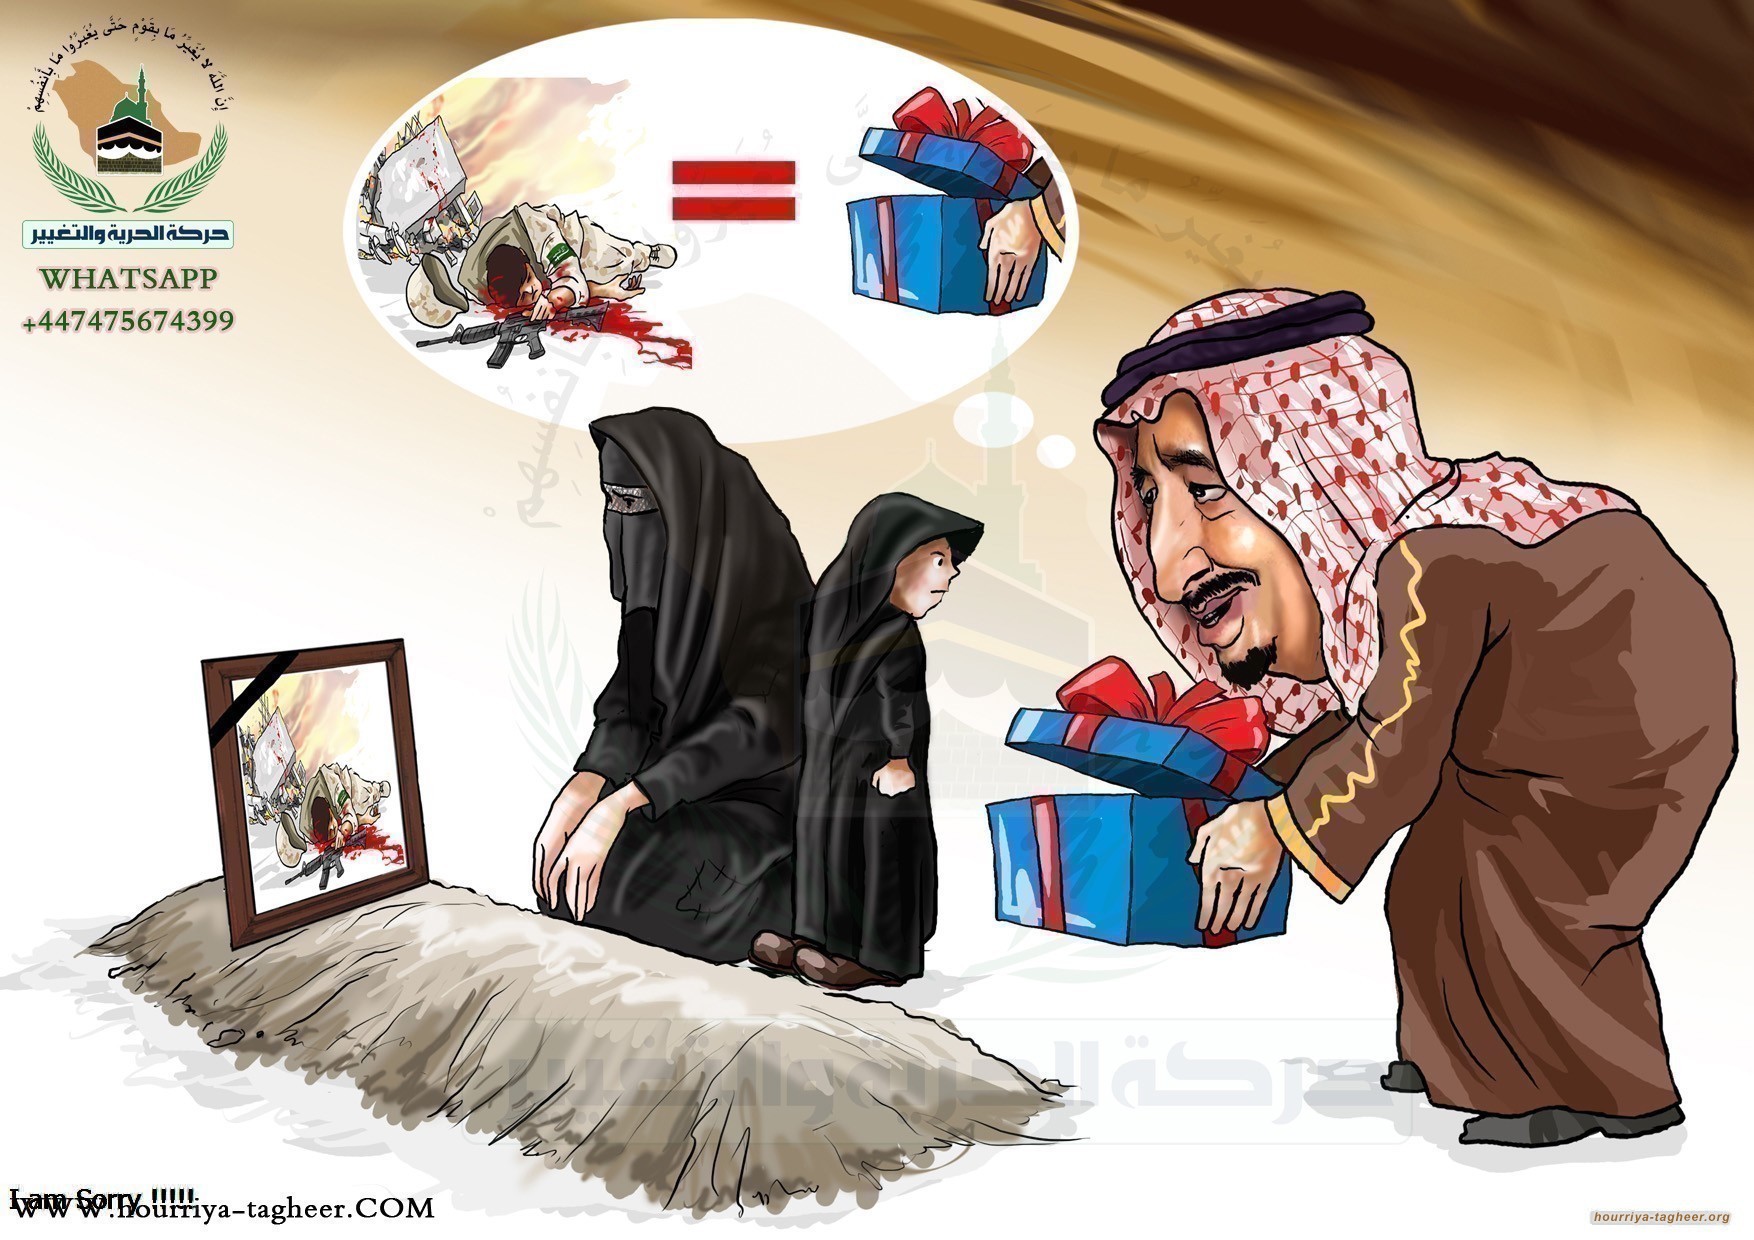 التحالف السعودي وأسياده يتحركون لإعلان حضرموت دولة مستقلة!!